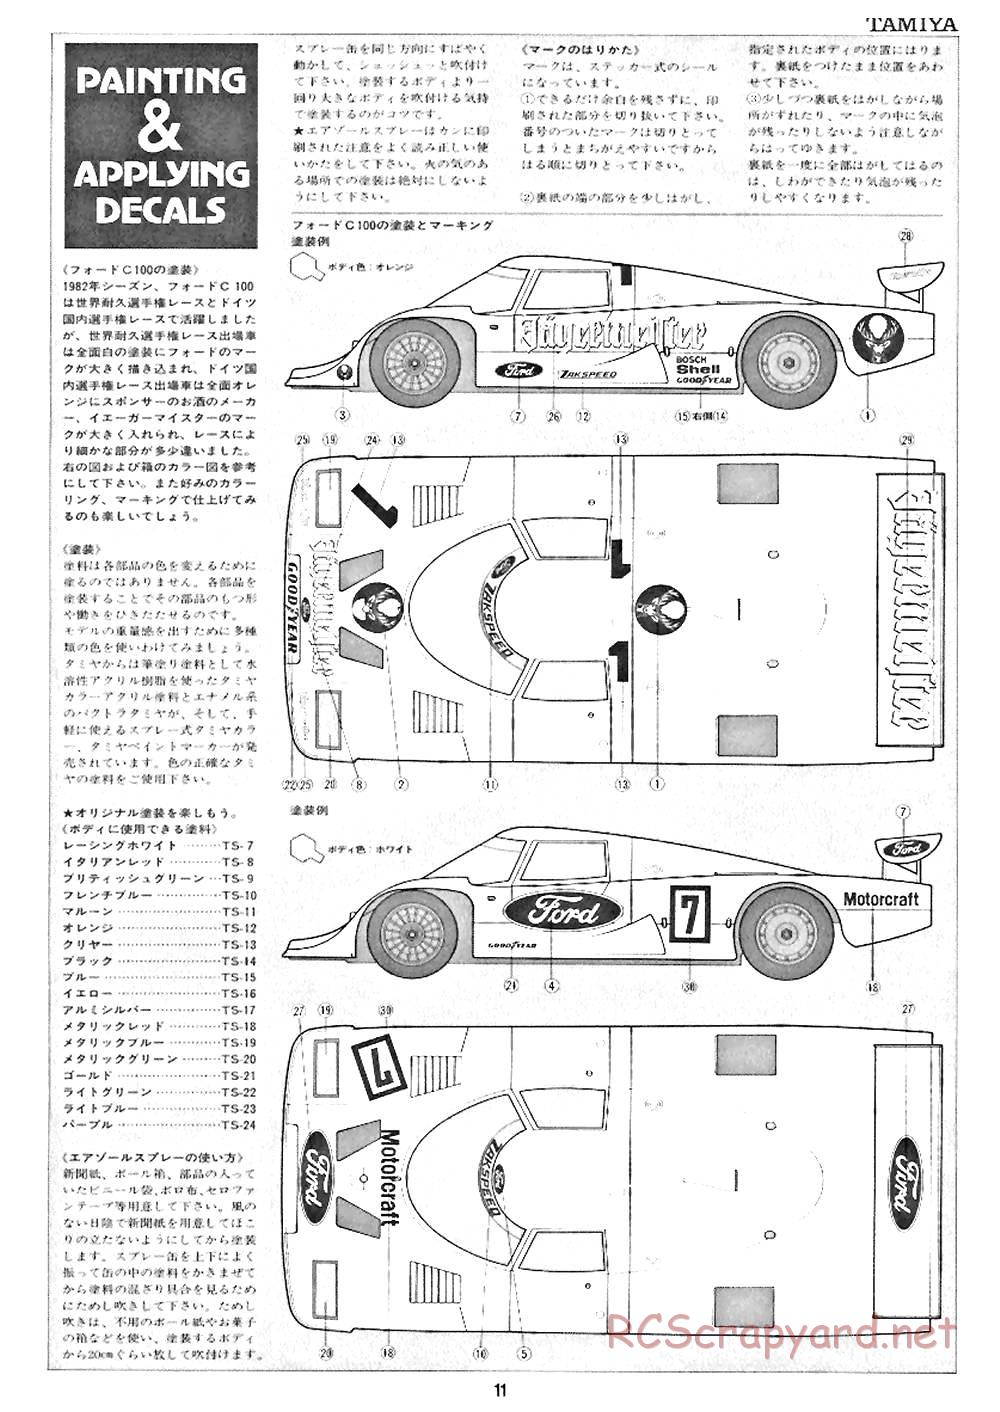 Tamiya - Ford C100 - RM MK.4 - 58033 - Manual - Page 11